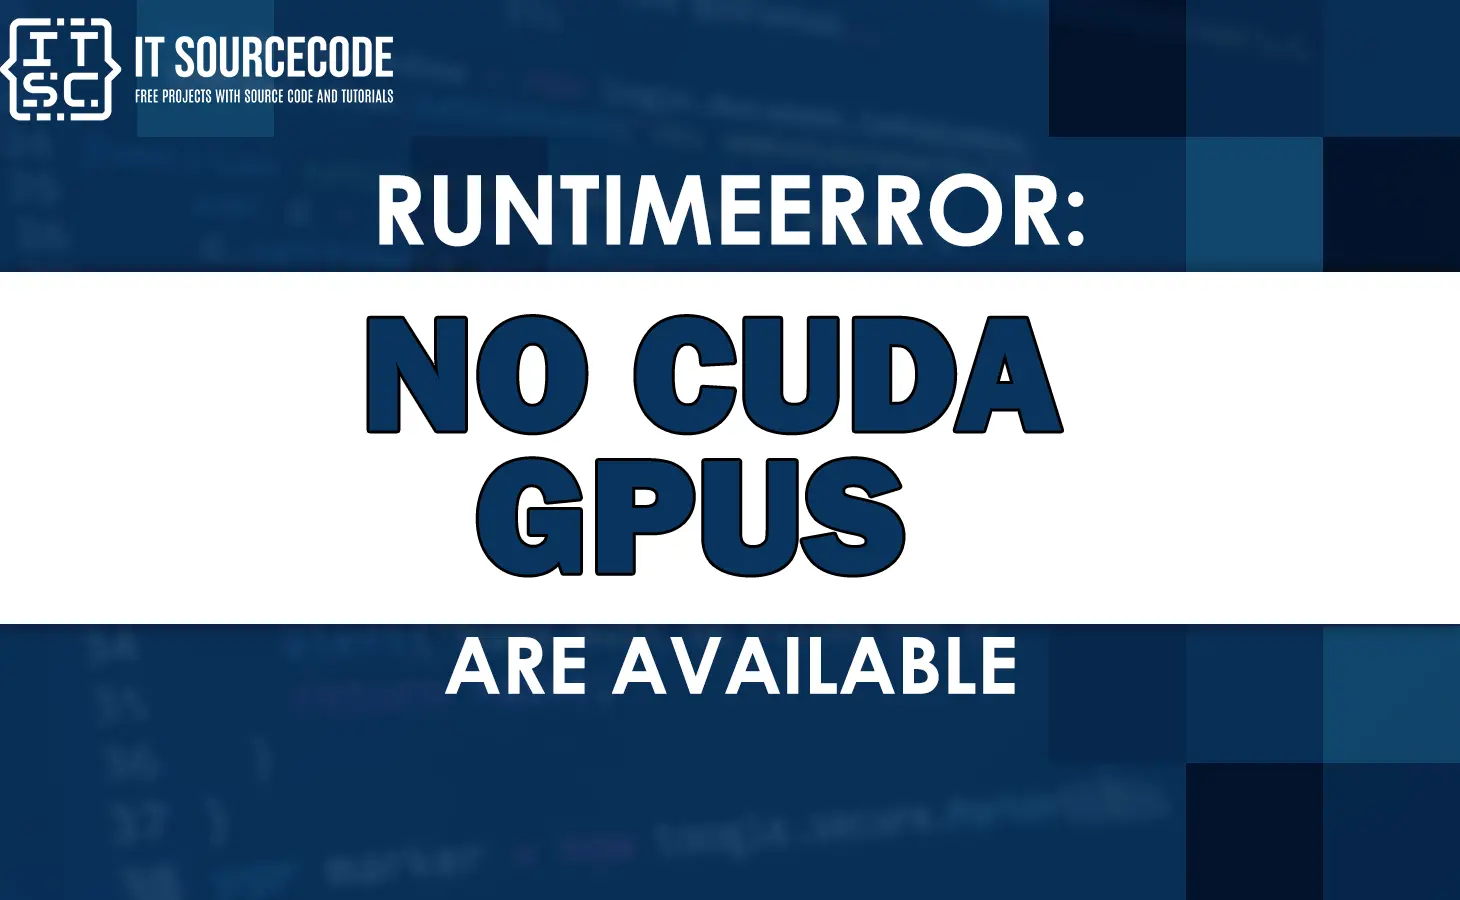 Runtimeerror no cuda gpus are available